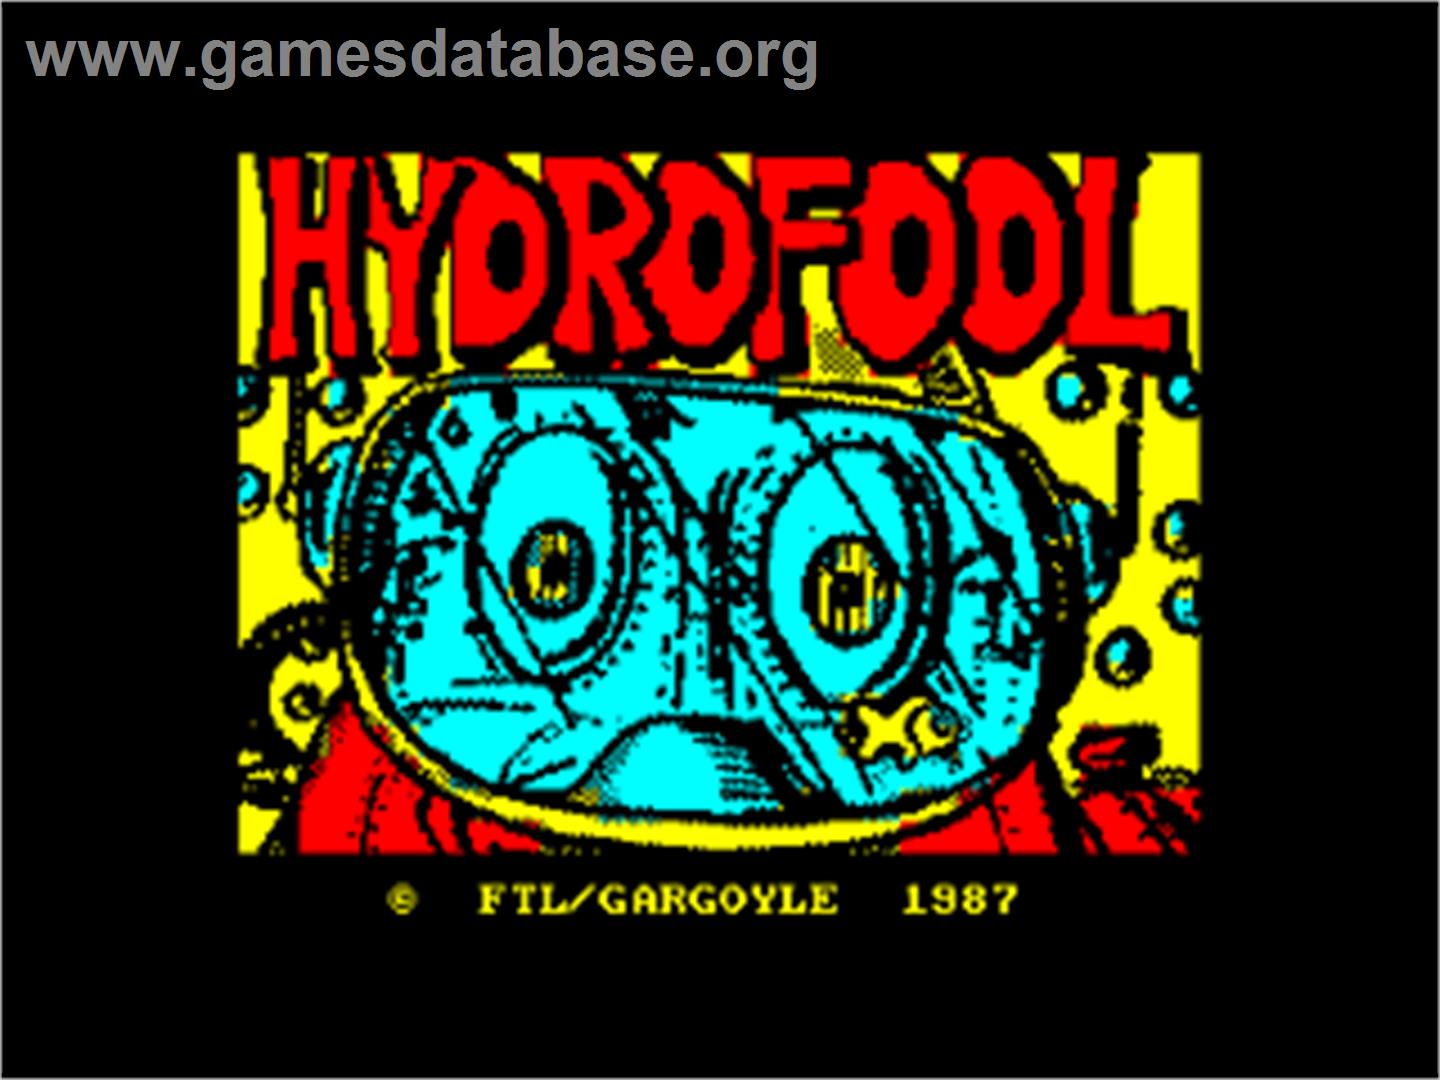 Hydrofool - Amstrad CPC - Artwork - Title Screen